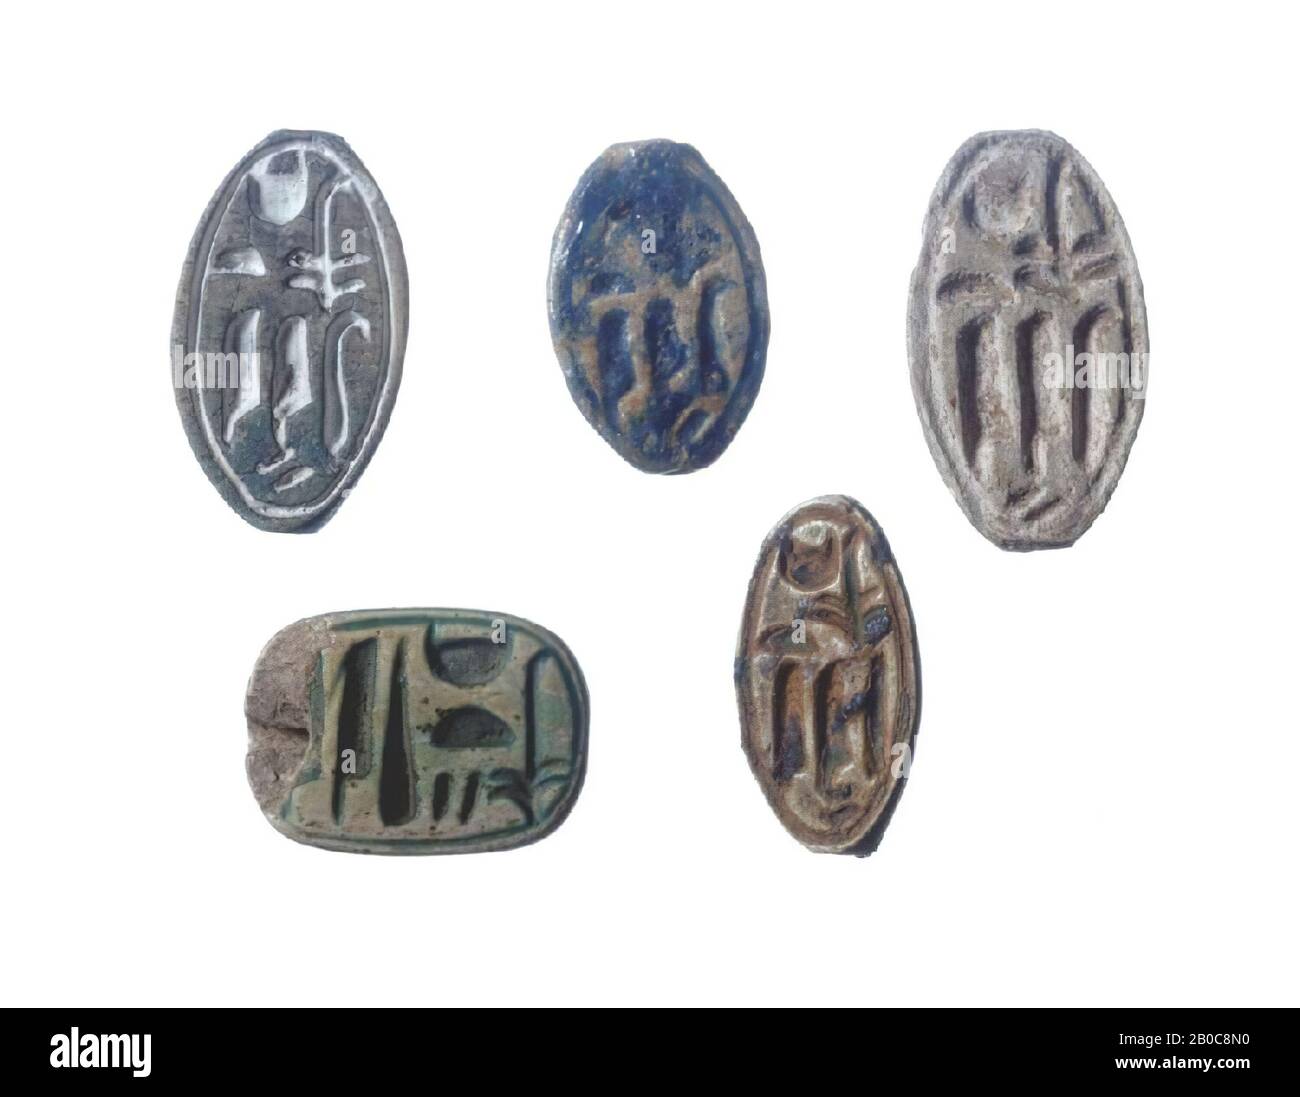 Plaque, ovale, Teje, phoque, plaque, foi, longueur: 2 cm, Nouveau Royaume, 18ème dynastie, Amenhotep III, Egypte Banque D'Images